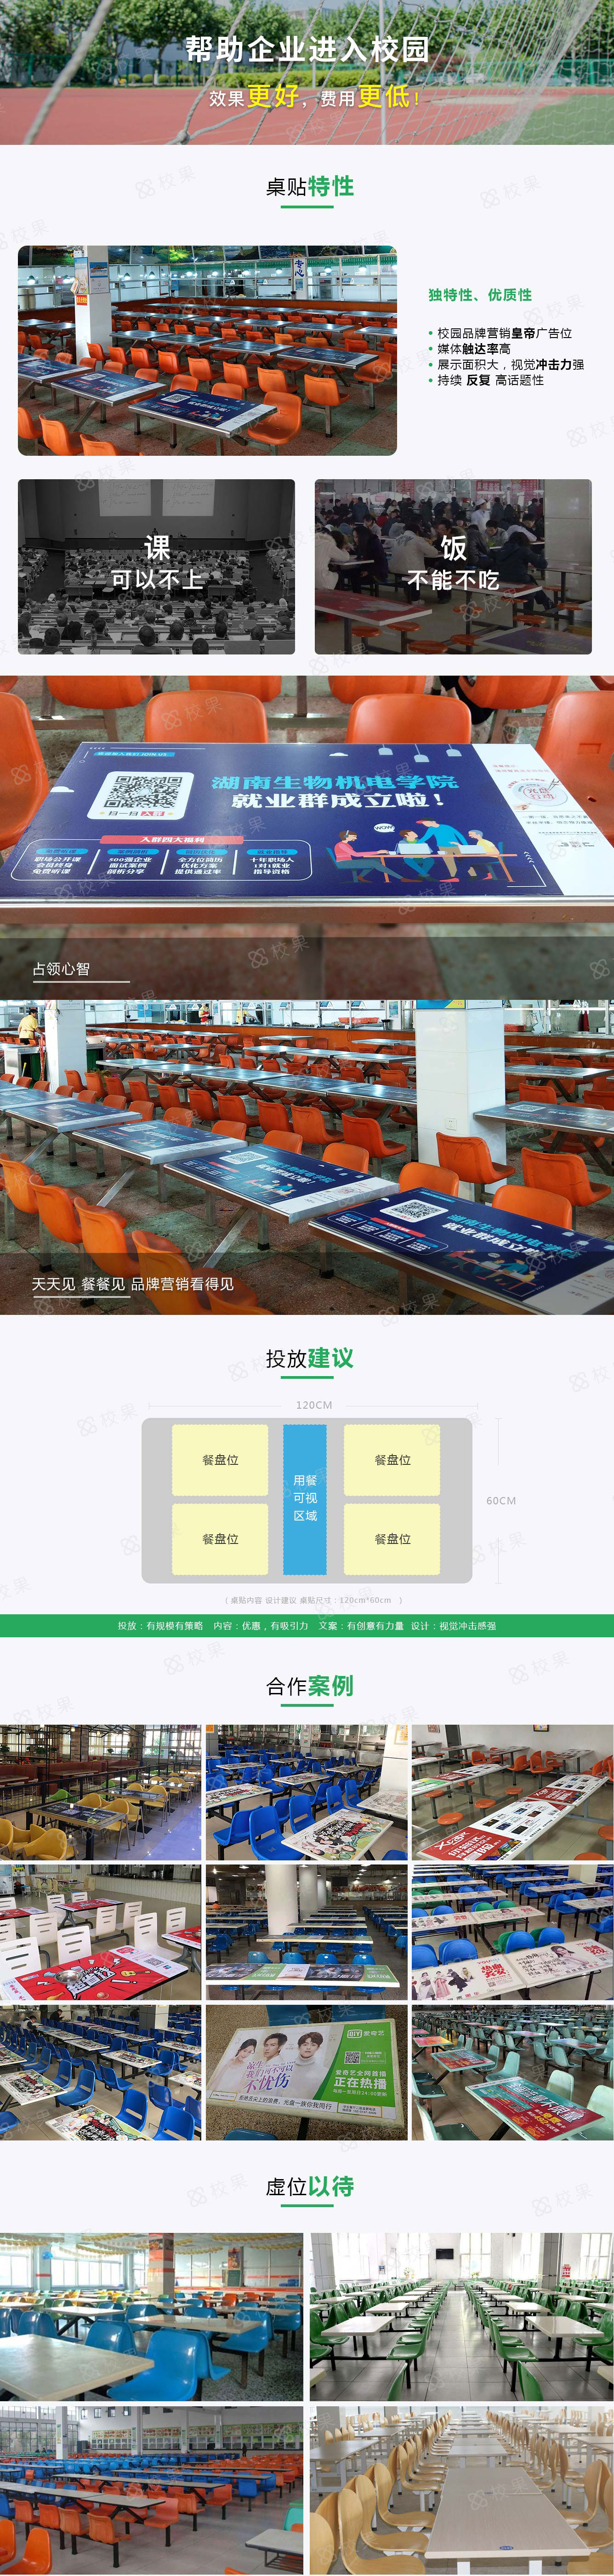 【北京校园广告】北京理工大学（中关村校区）-校园桌贴广告投放资源